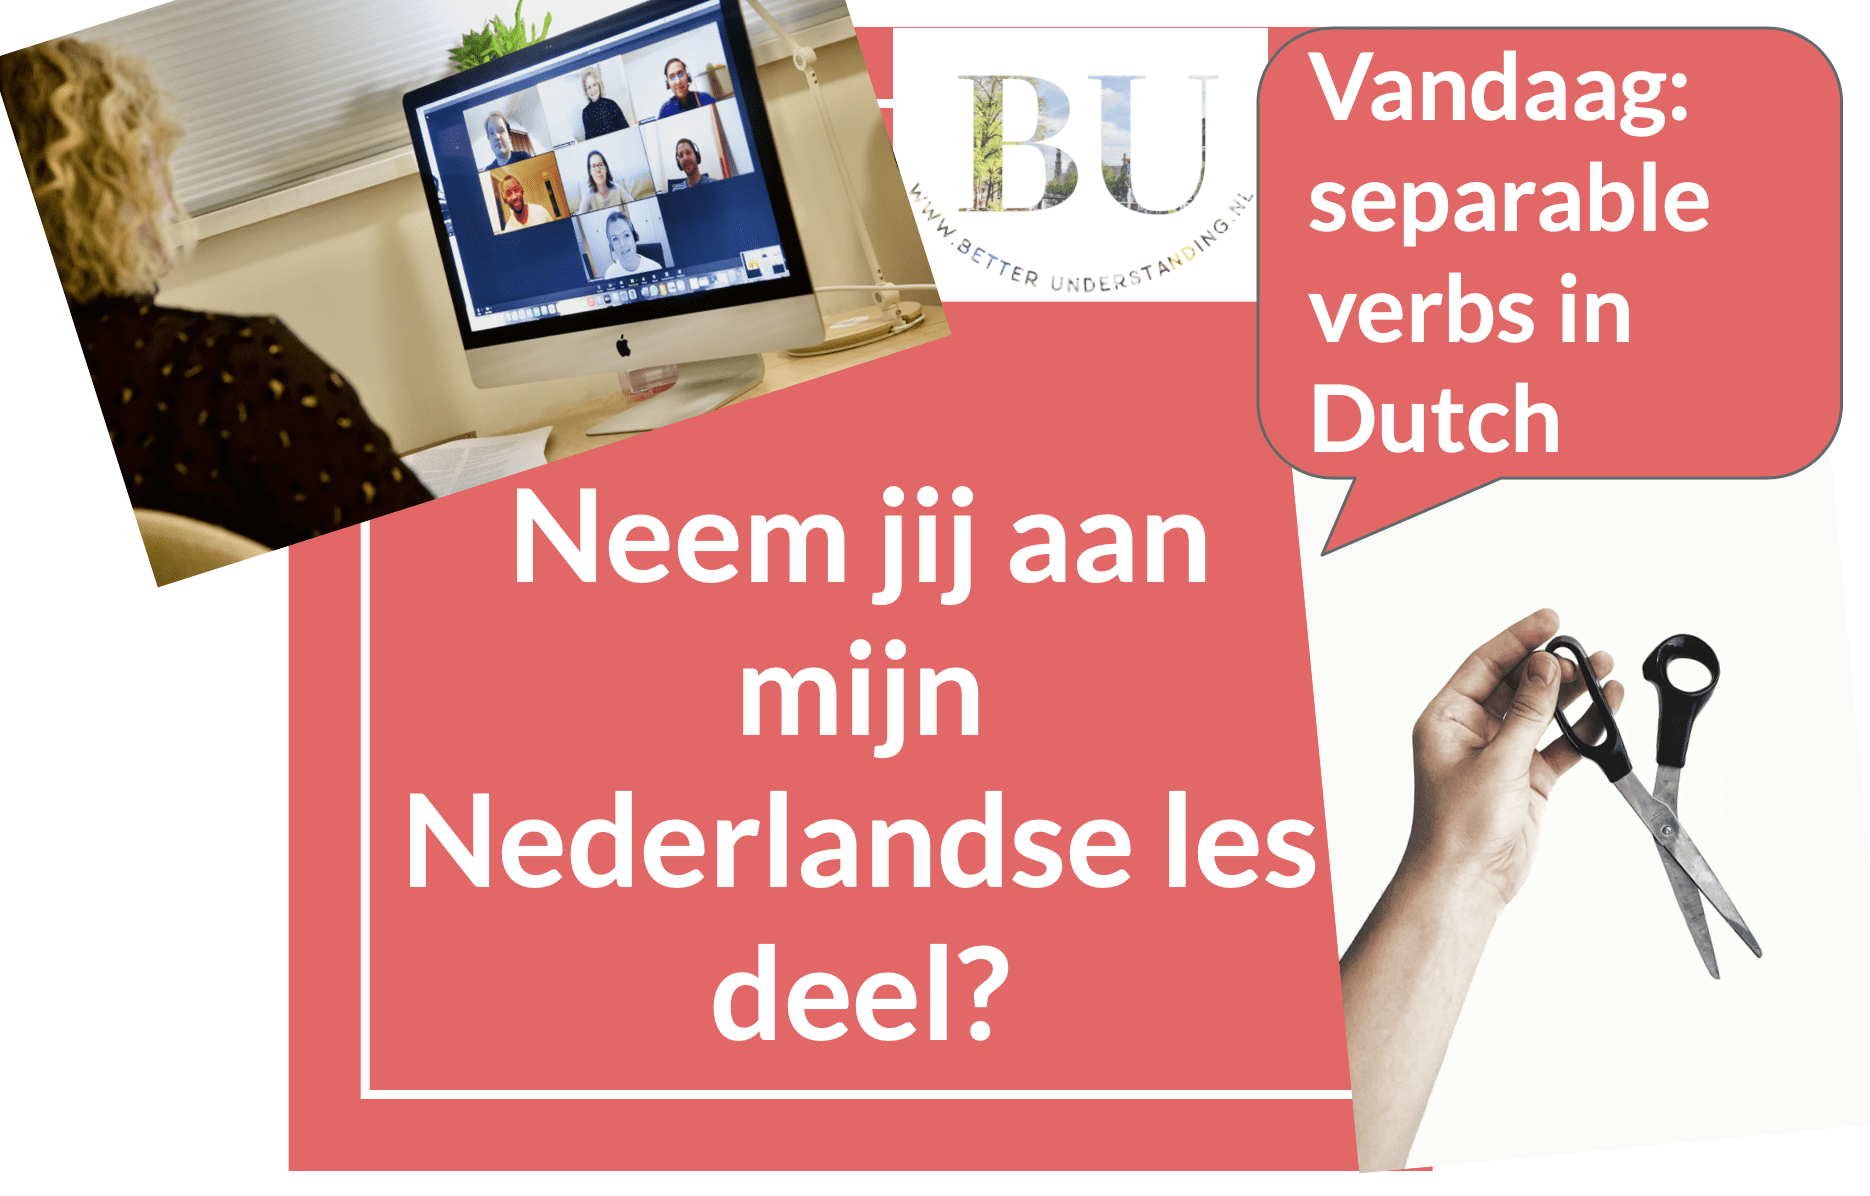 separable verbs in Dutch